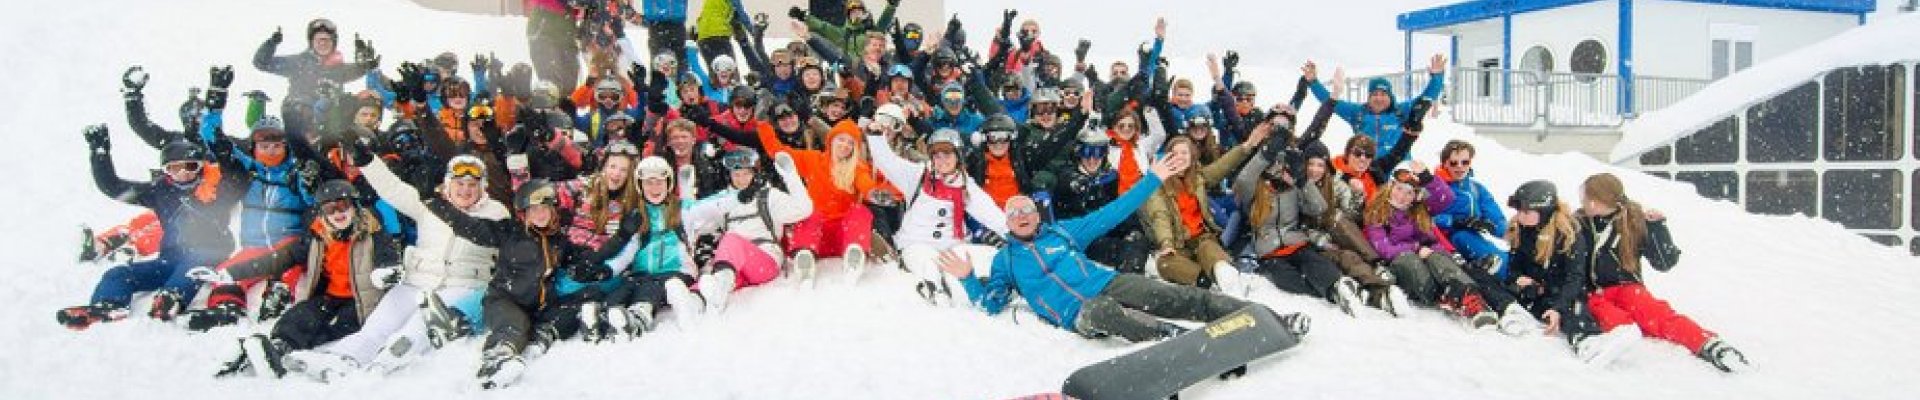 Wintersport groepsreis voor middelbare scholen